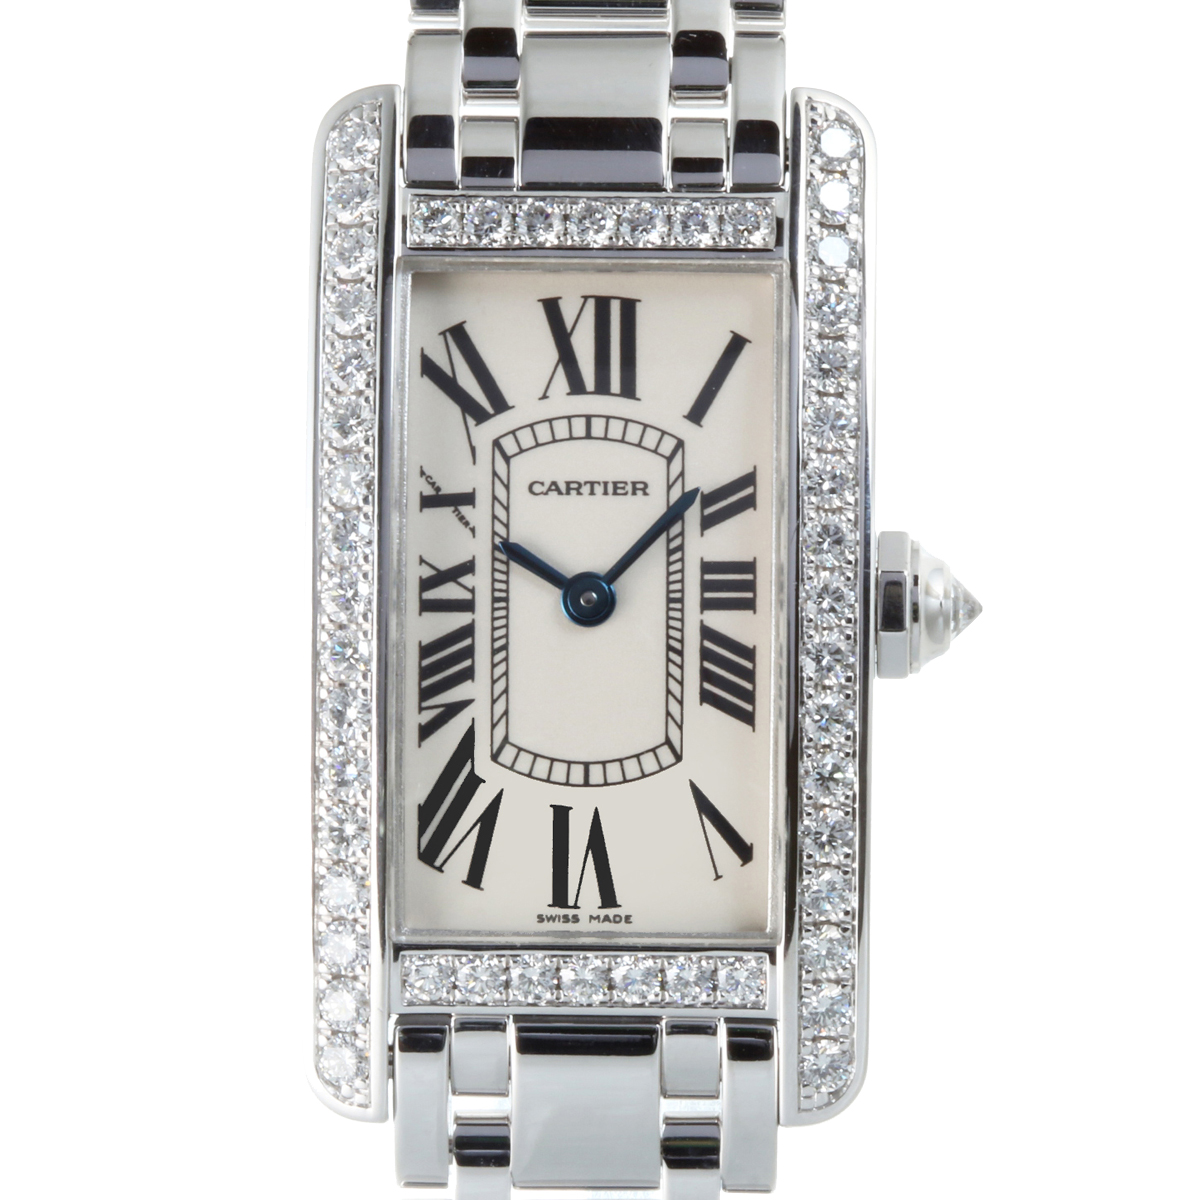 Cartier カルティエ Wb タンクアメリカンsm ベゼルダイヤモンド 750ホワイトゴールド レディース 腕時計 Dh 中古 Aランク ー ブラモ 欲しいブランド品がすぐ見つかる ネット通販サイト